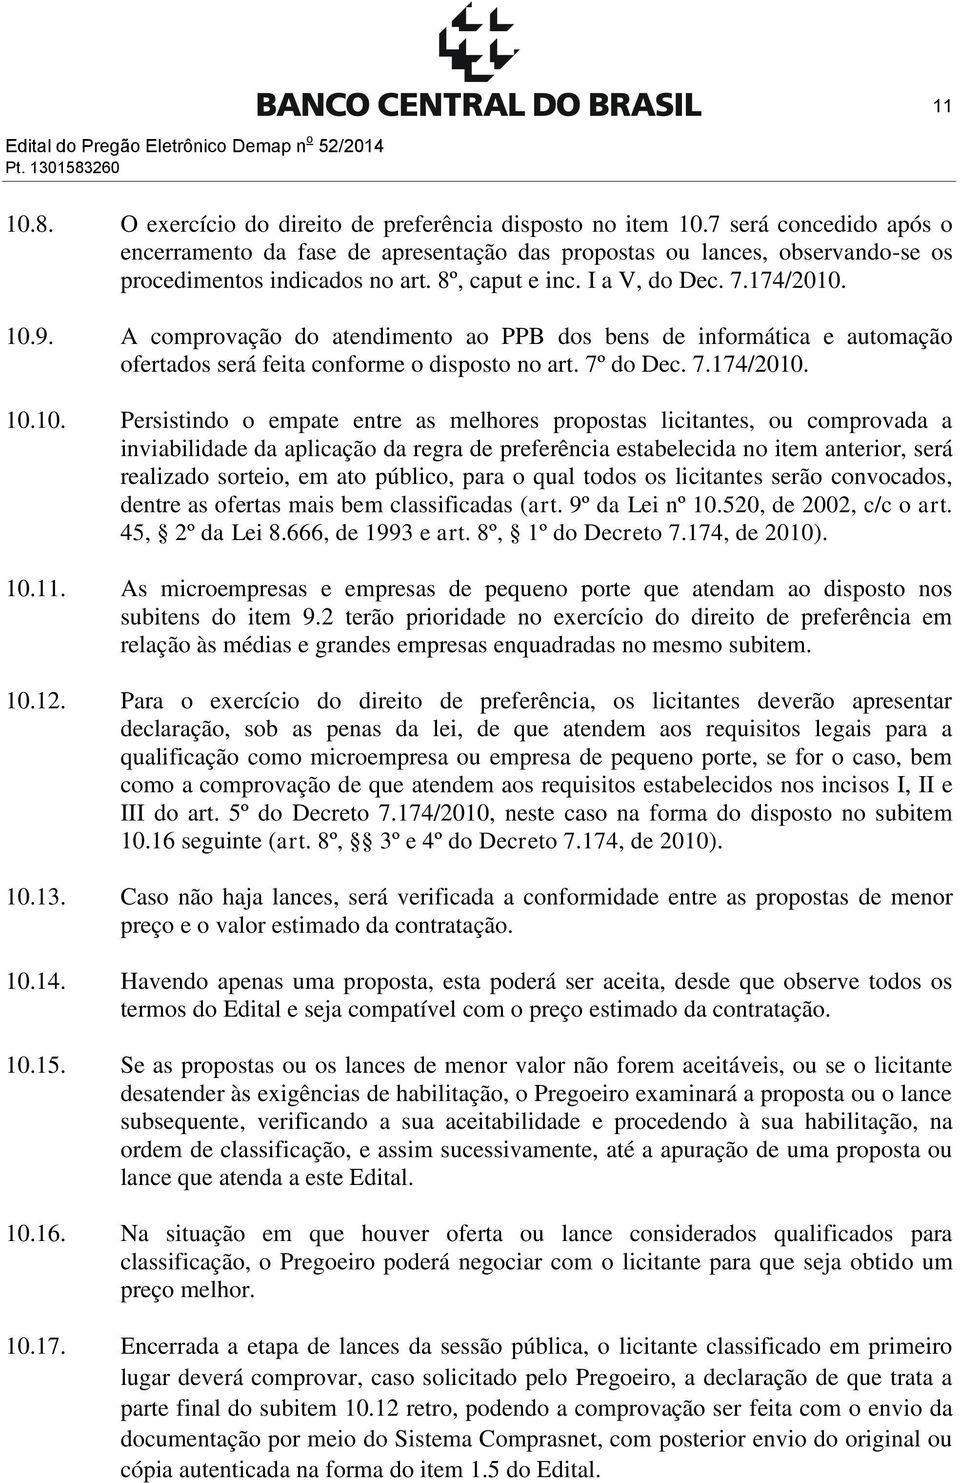 A comprovação do atendimento ao PPB dos bens de informática e automação ofertados será feita conforme o disposto no art. 7º do Dec. 7.174/2010.